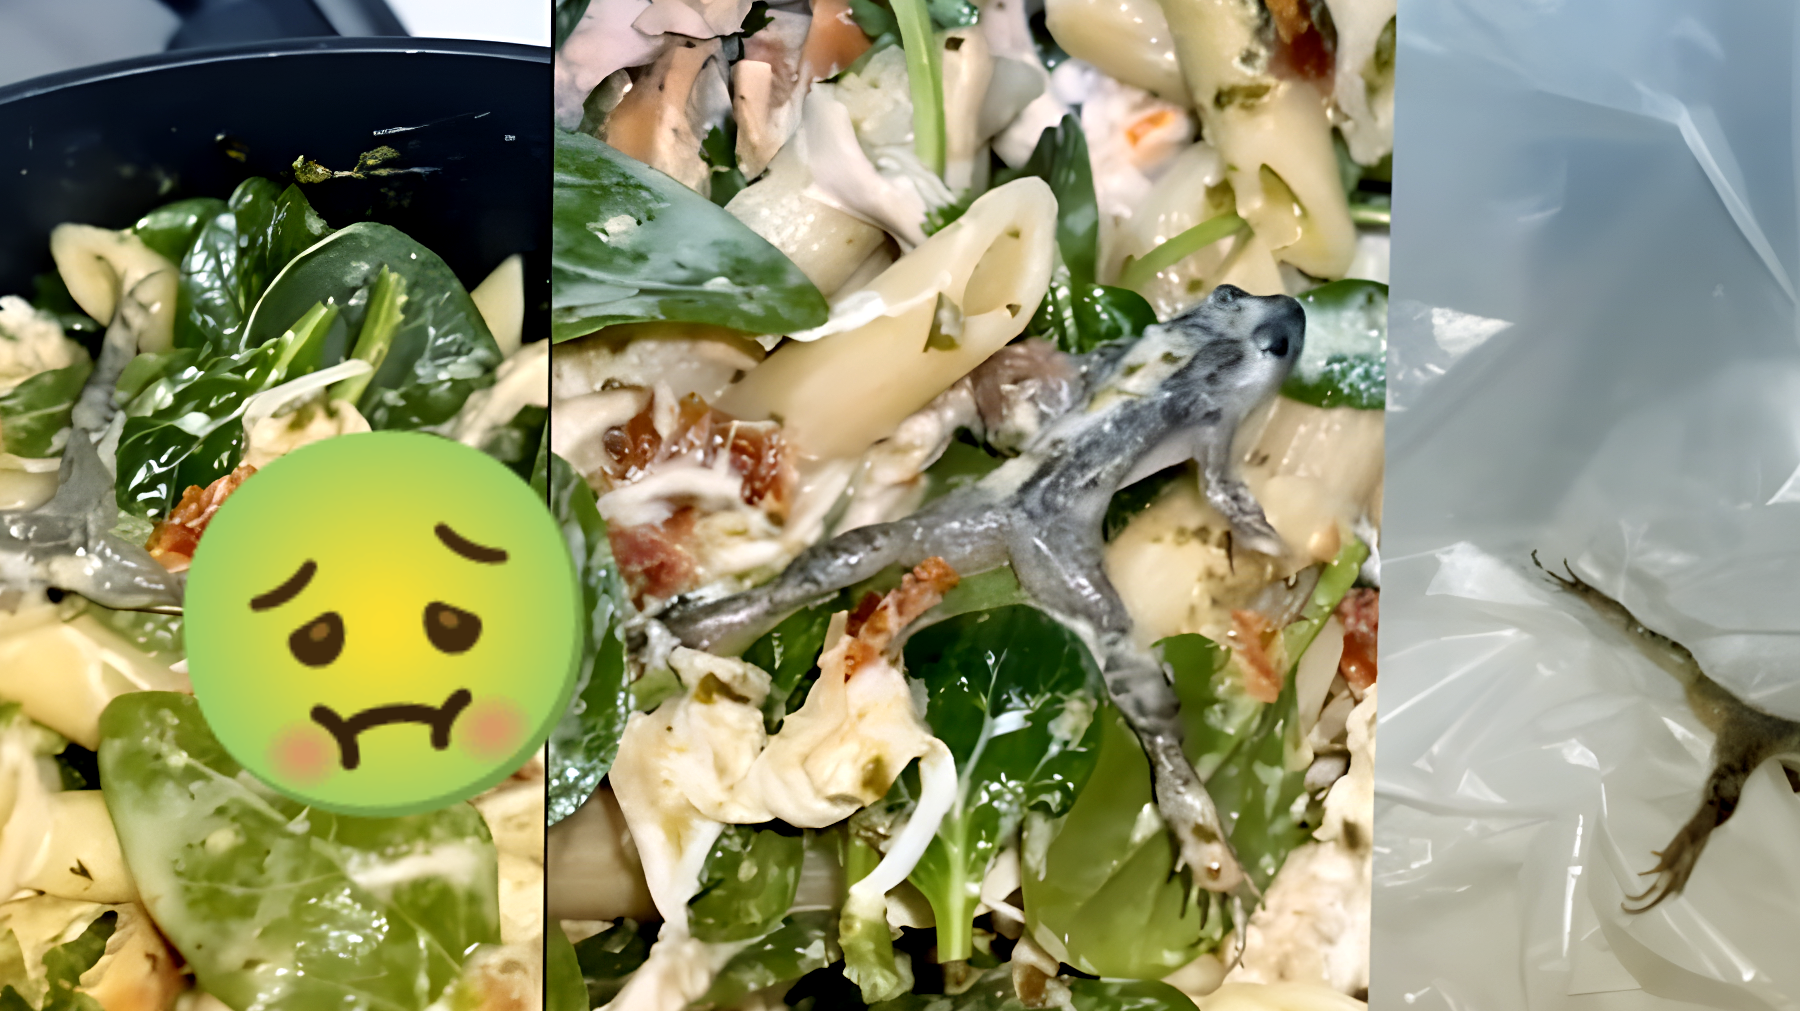 Scoperta terribile nel supermercato: "Ho trovato una rana morta nella busta di spinaci!" Il video è sconvolgente